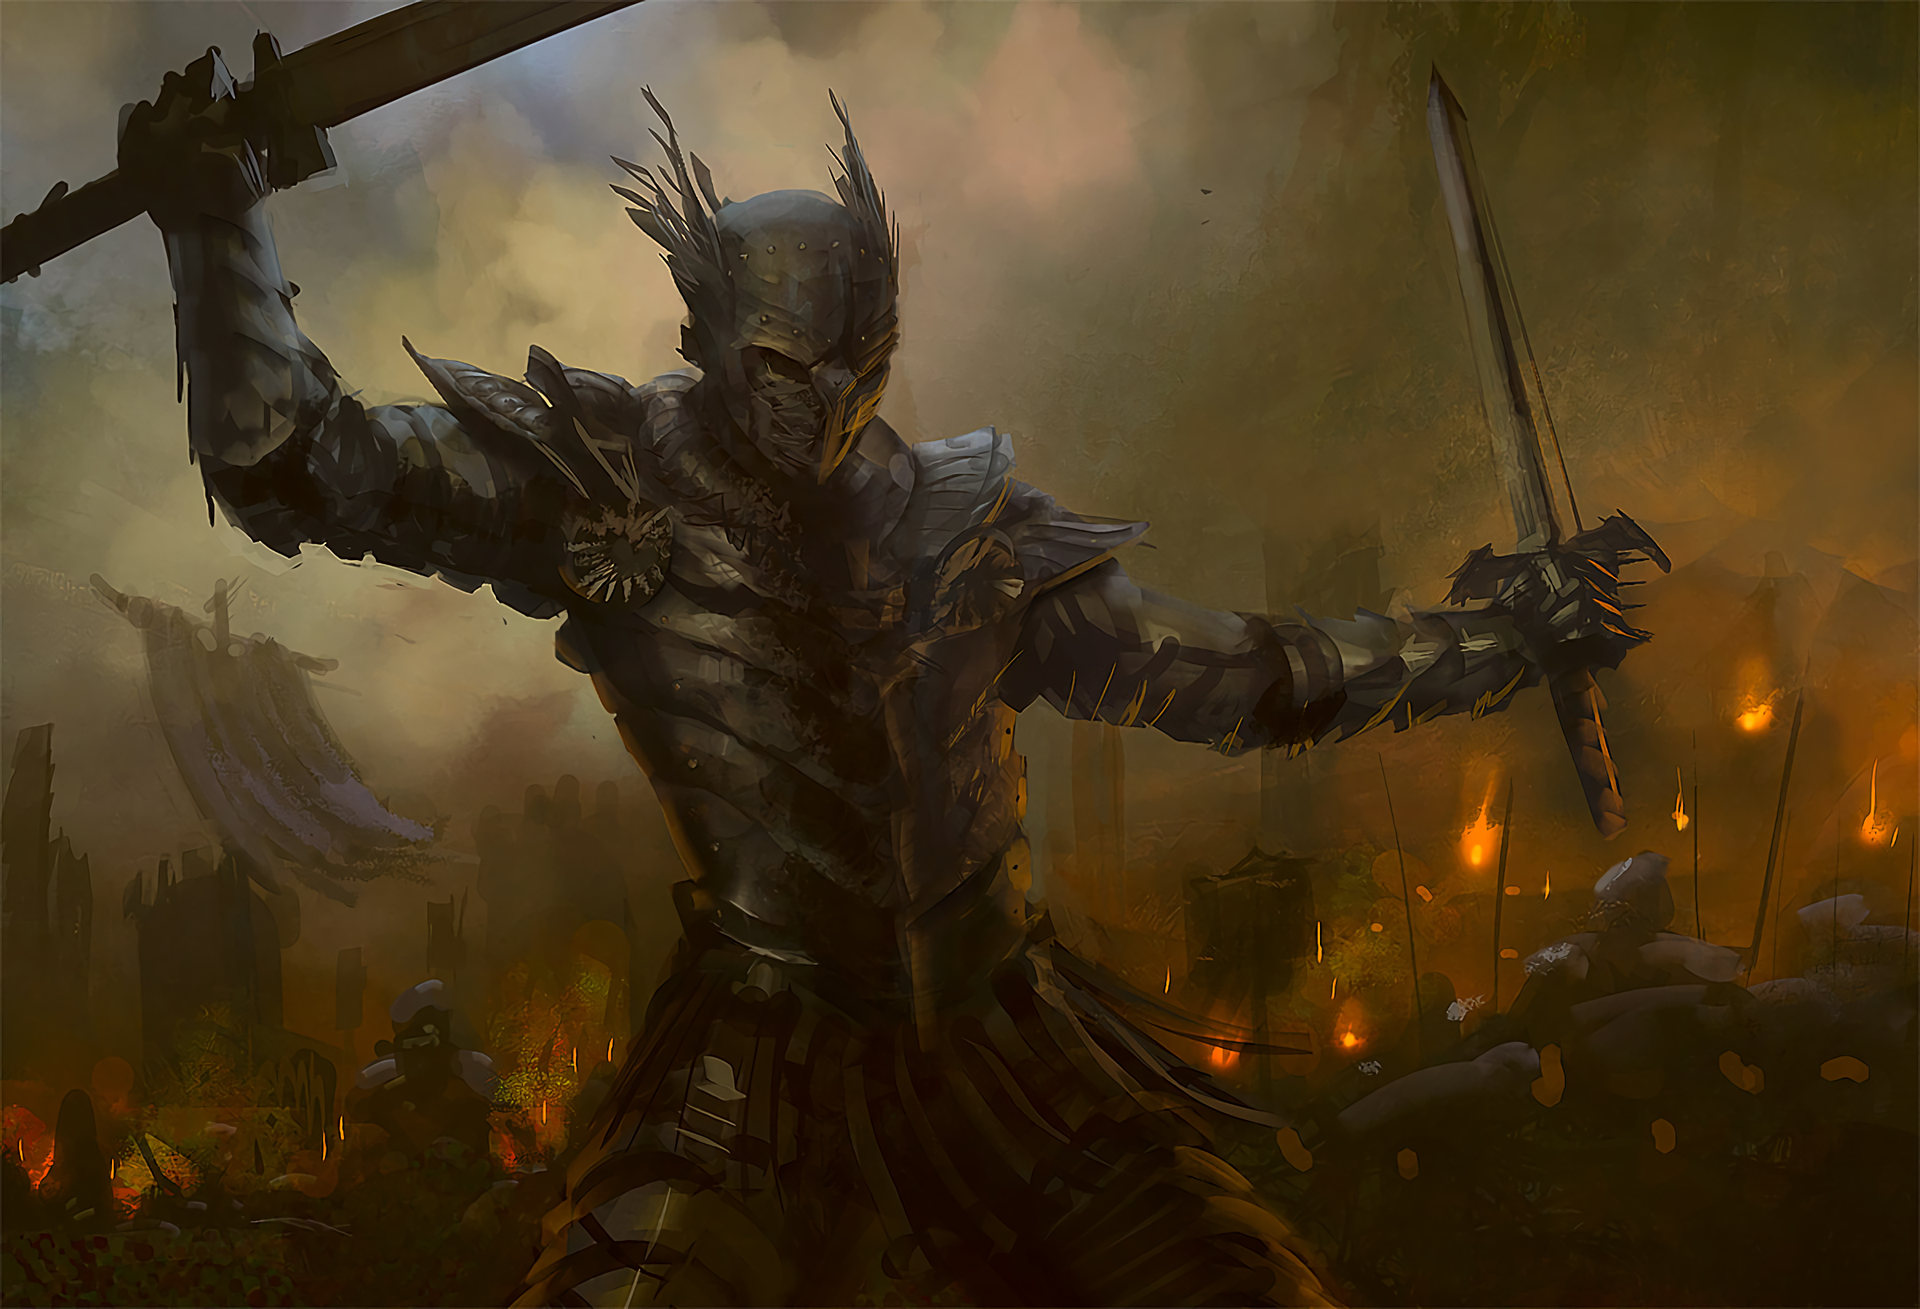 A fierce battle with a warrior wielding a sword in armor.